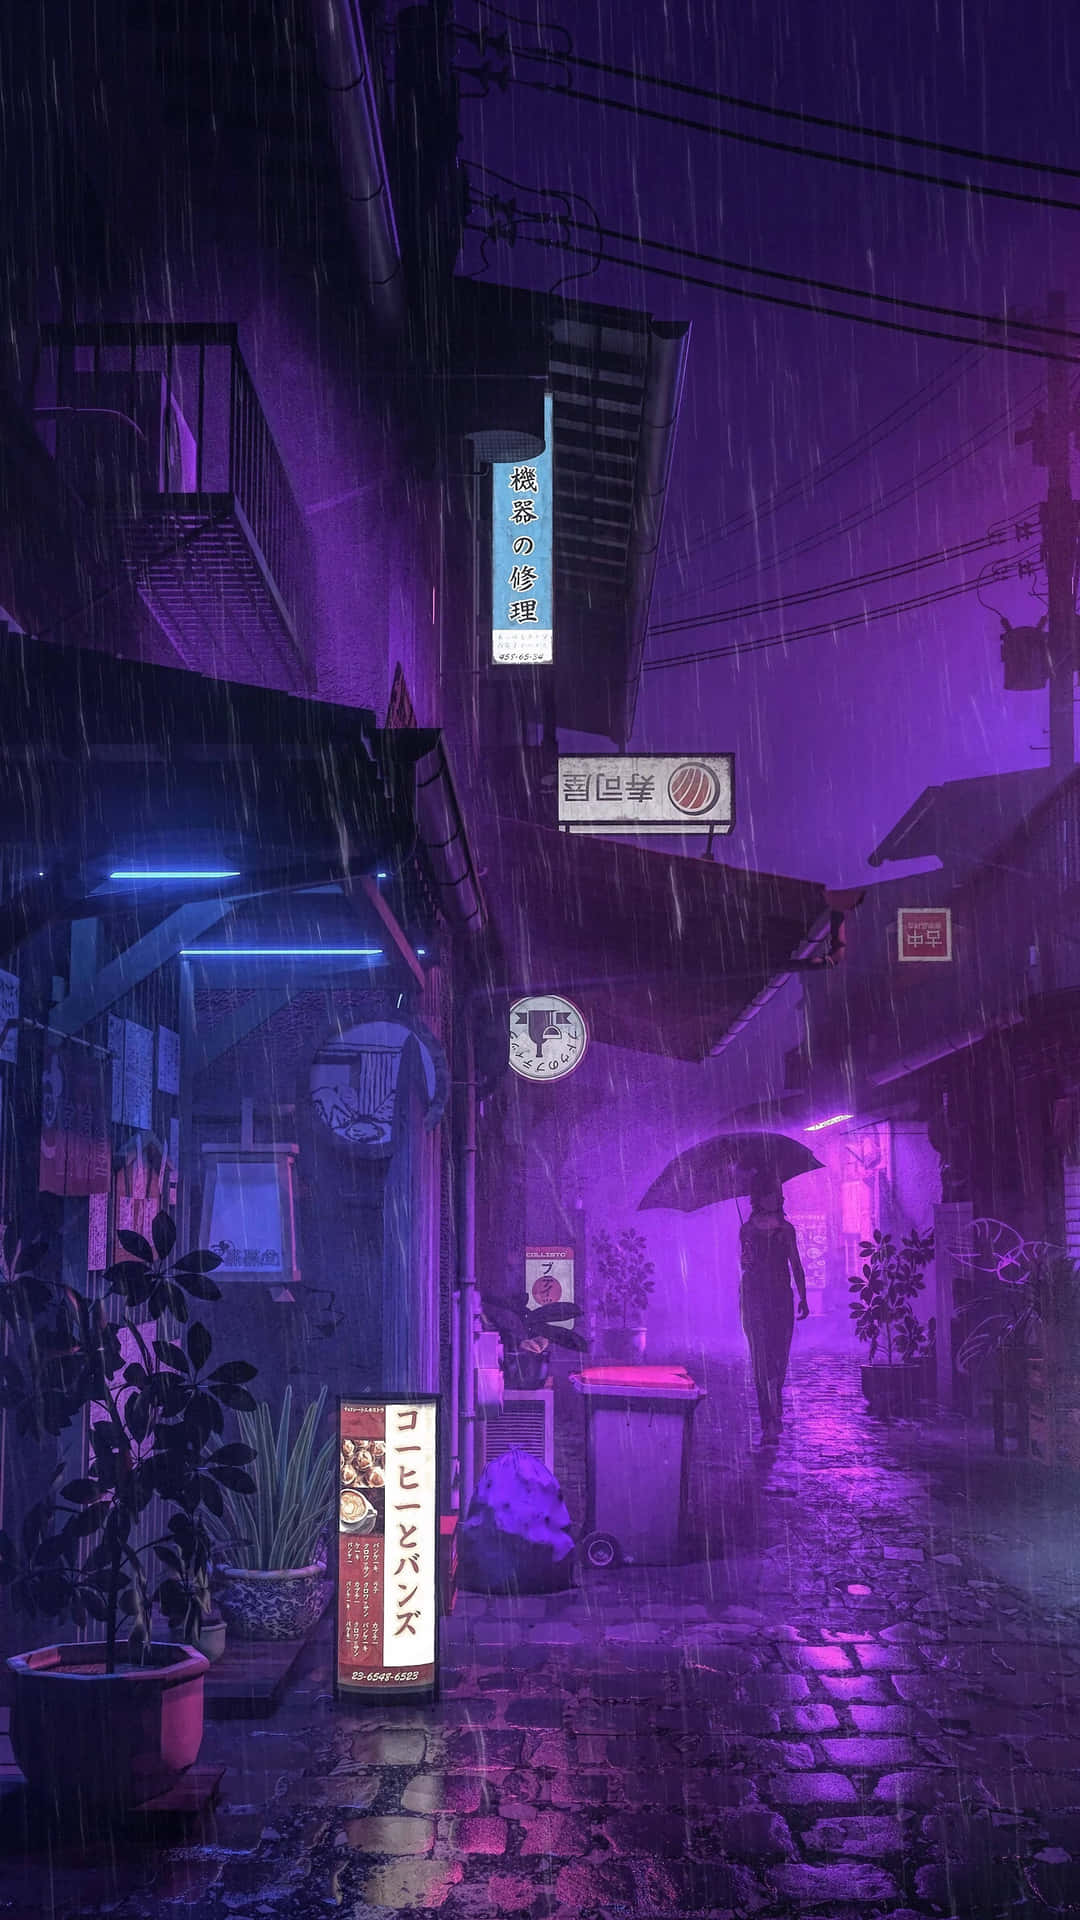 Eineregnerische Nachtszene Mit Einem Neon-schild Und Einem Regenschirm. Wallpaper